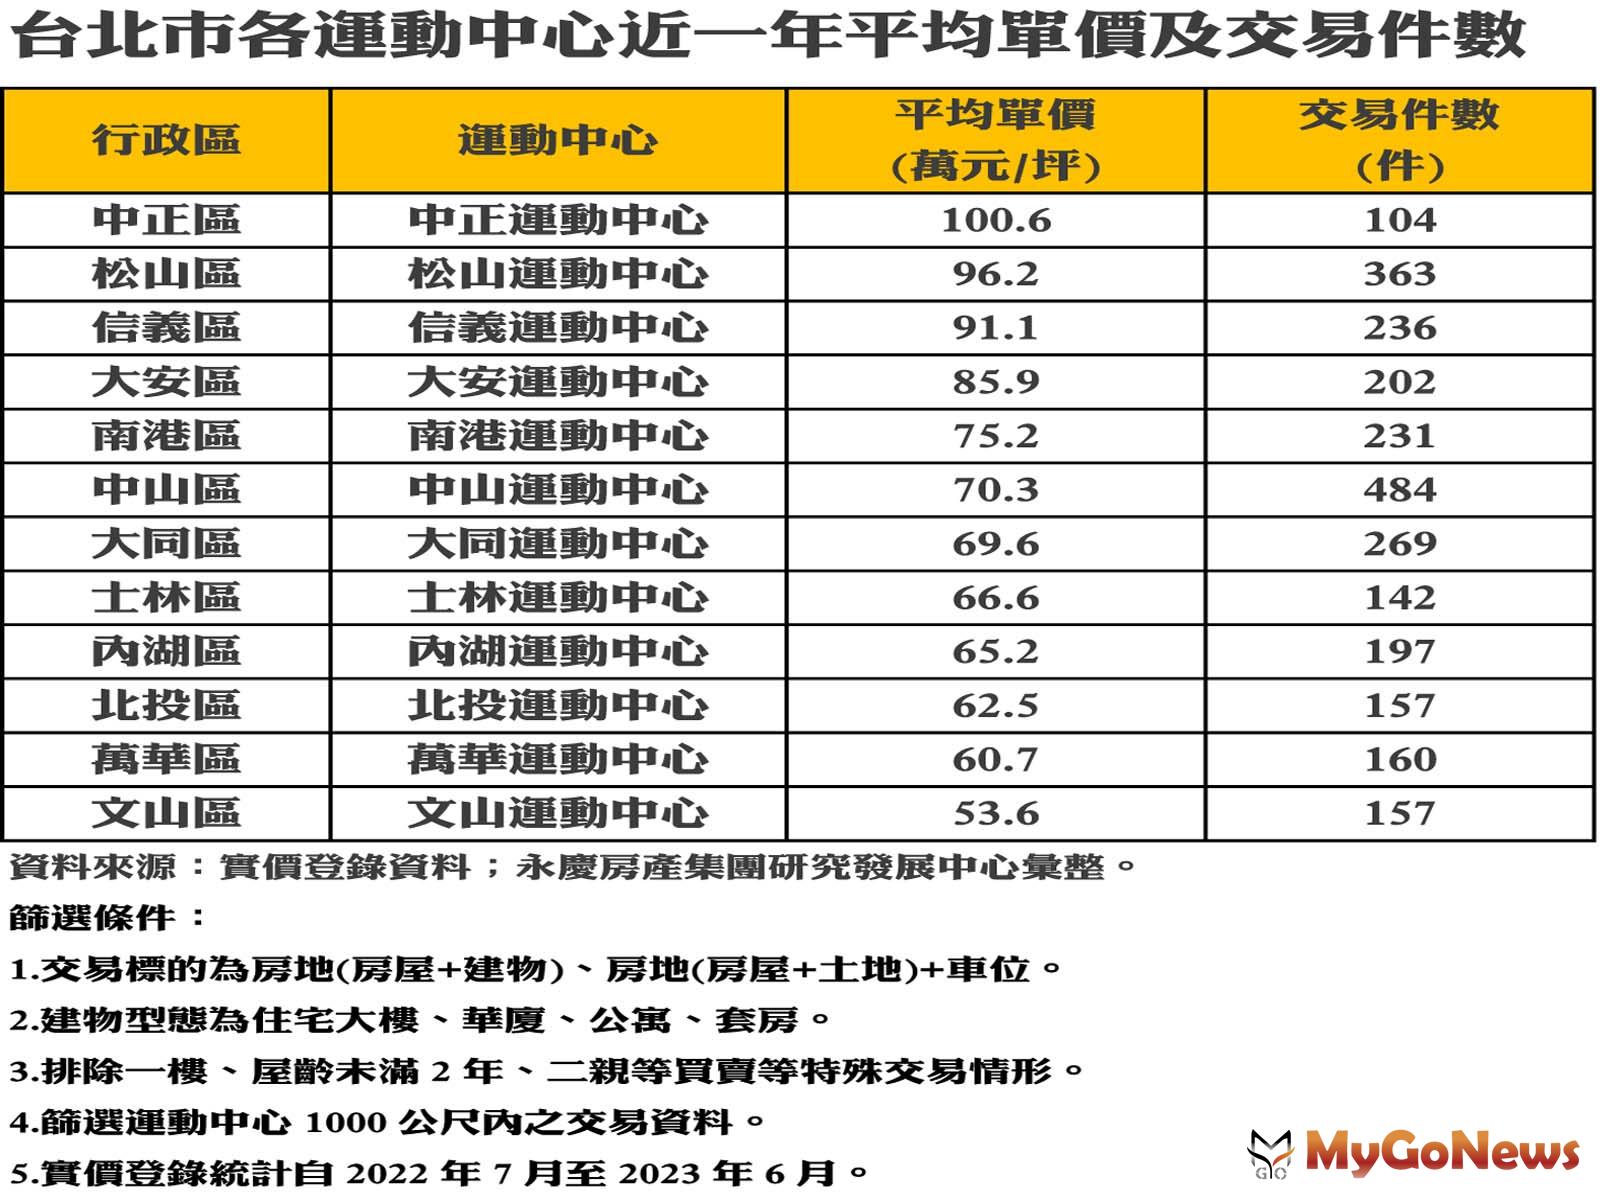 台北市各運動中心近一年平均單價及交易件數 MyGoNews房地產新聞 市場快訊